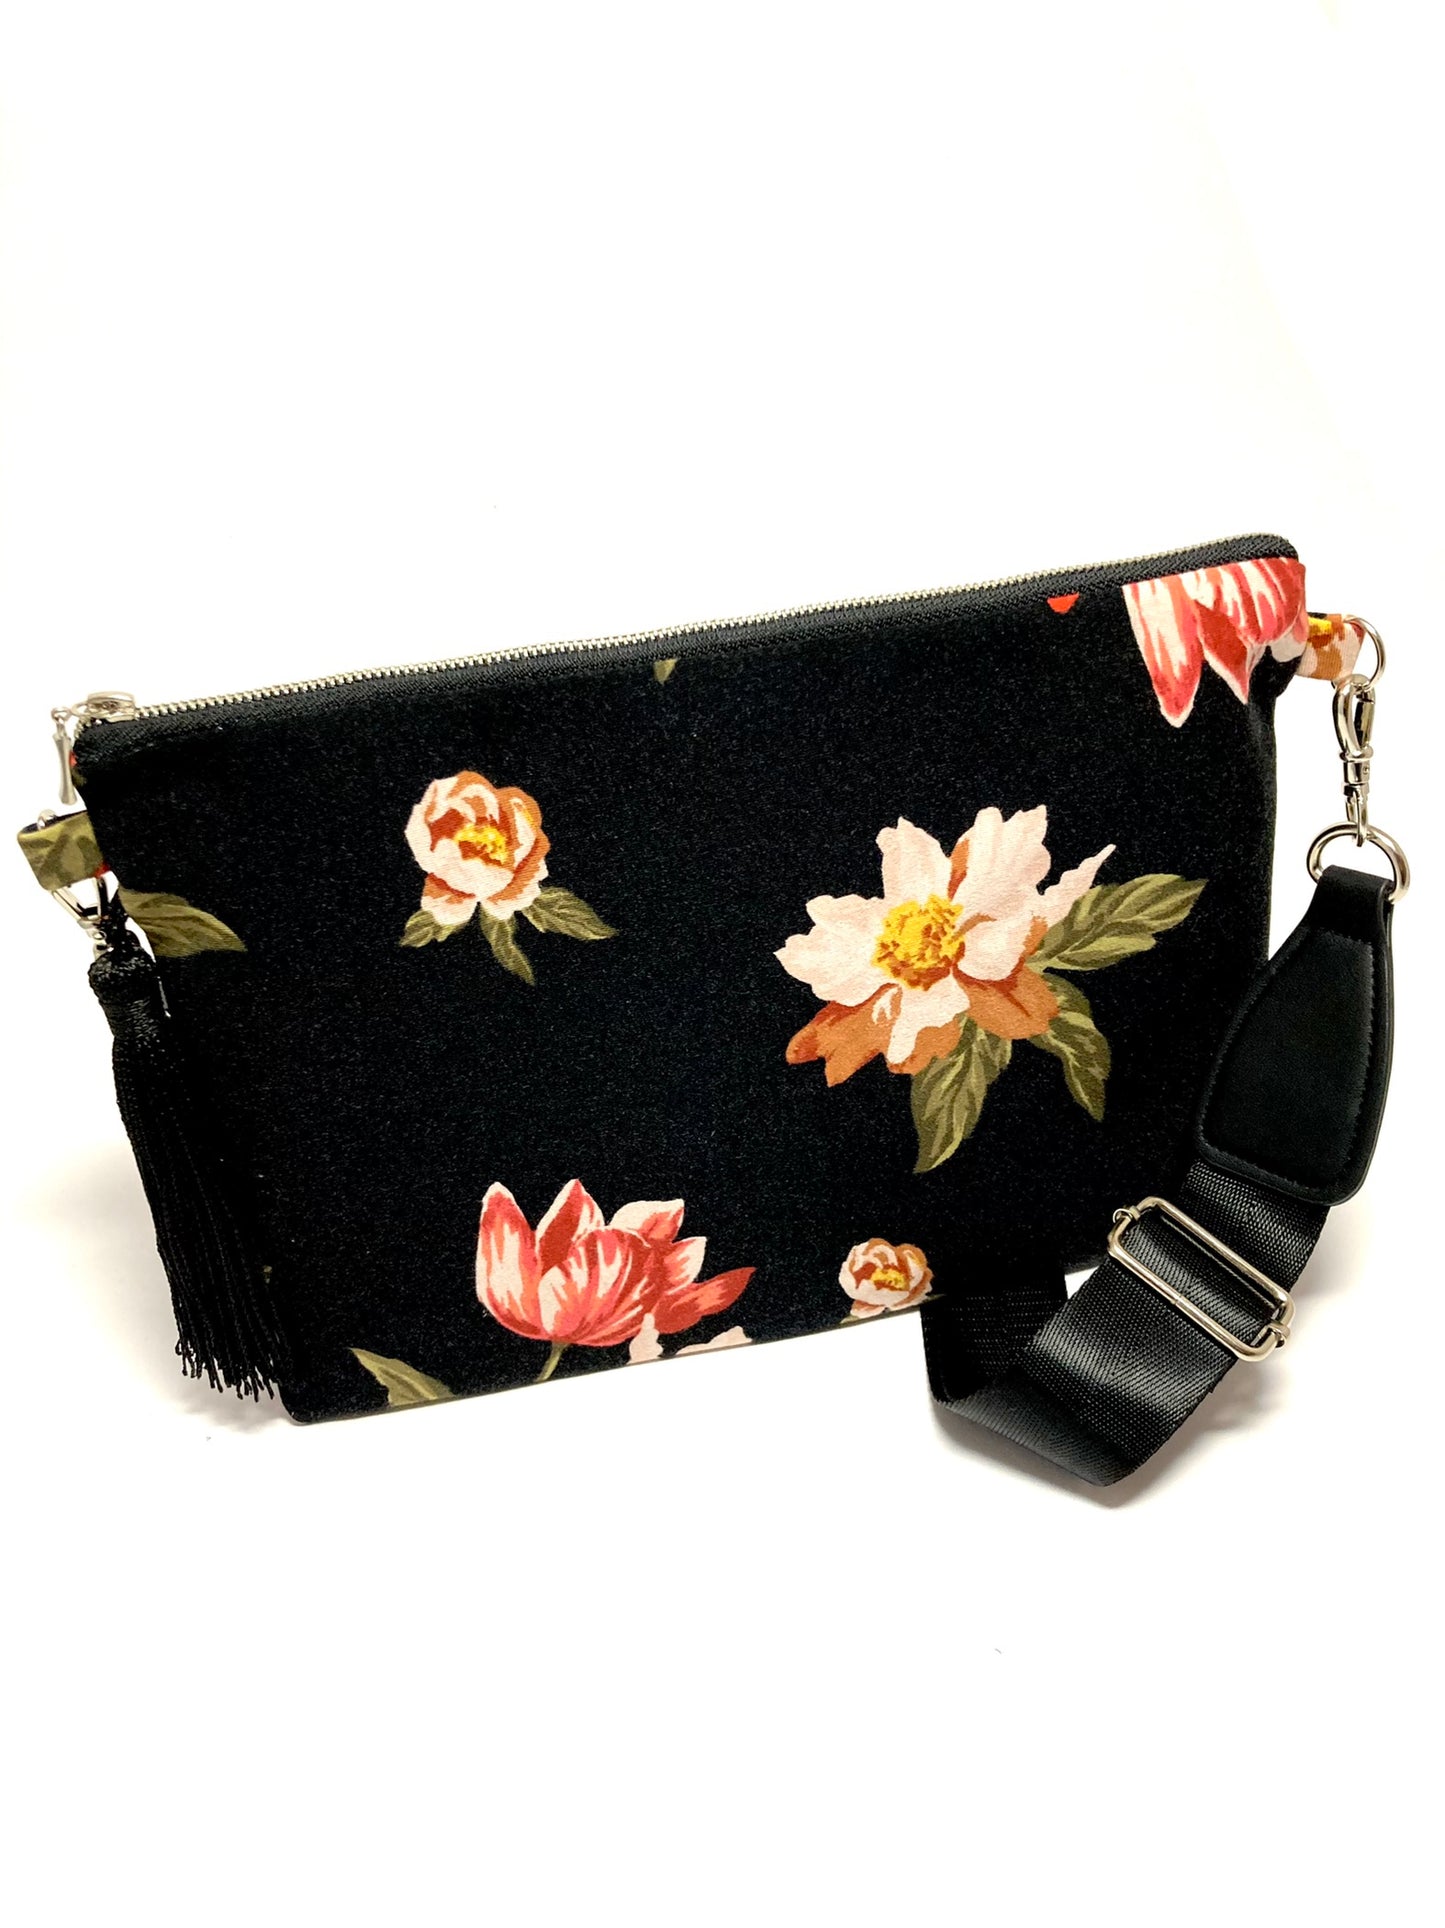 Floral boho bag with tassel